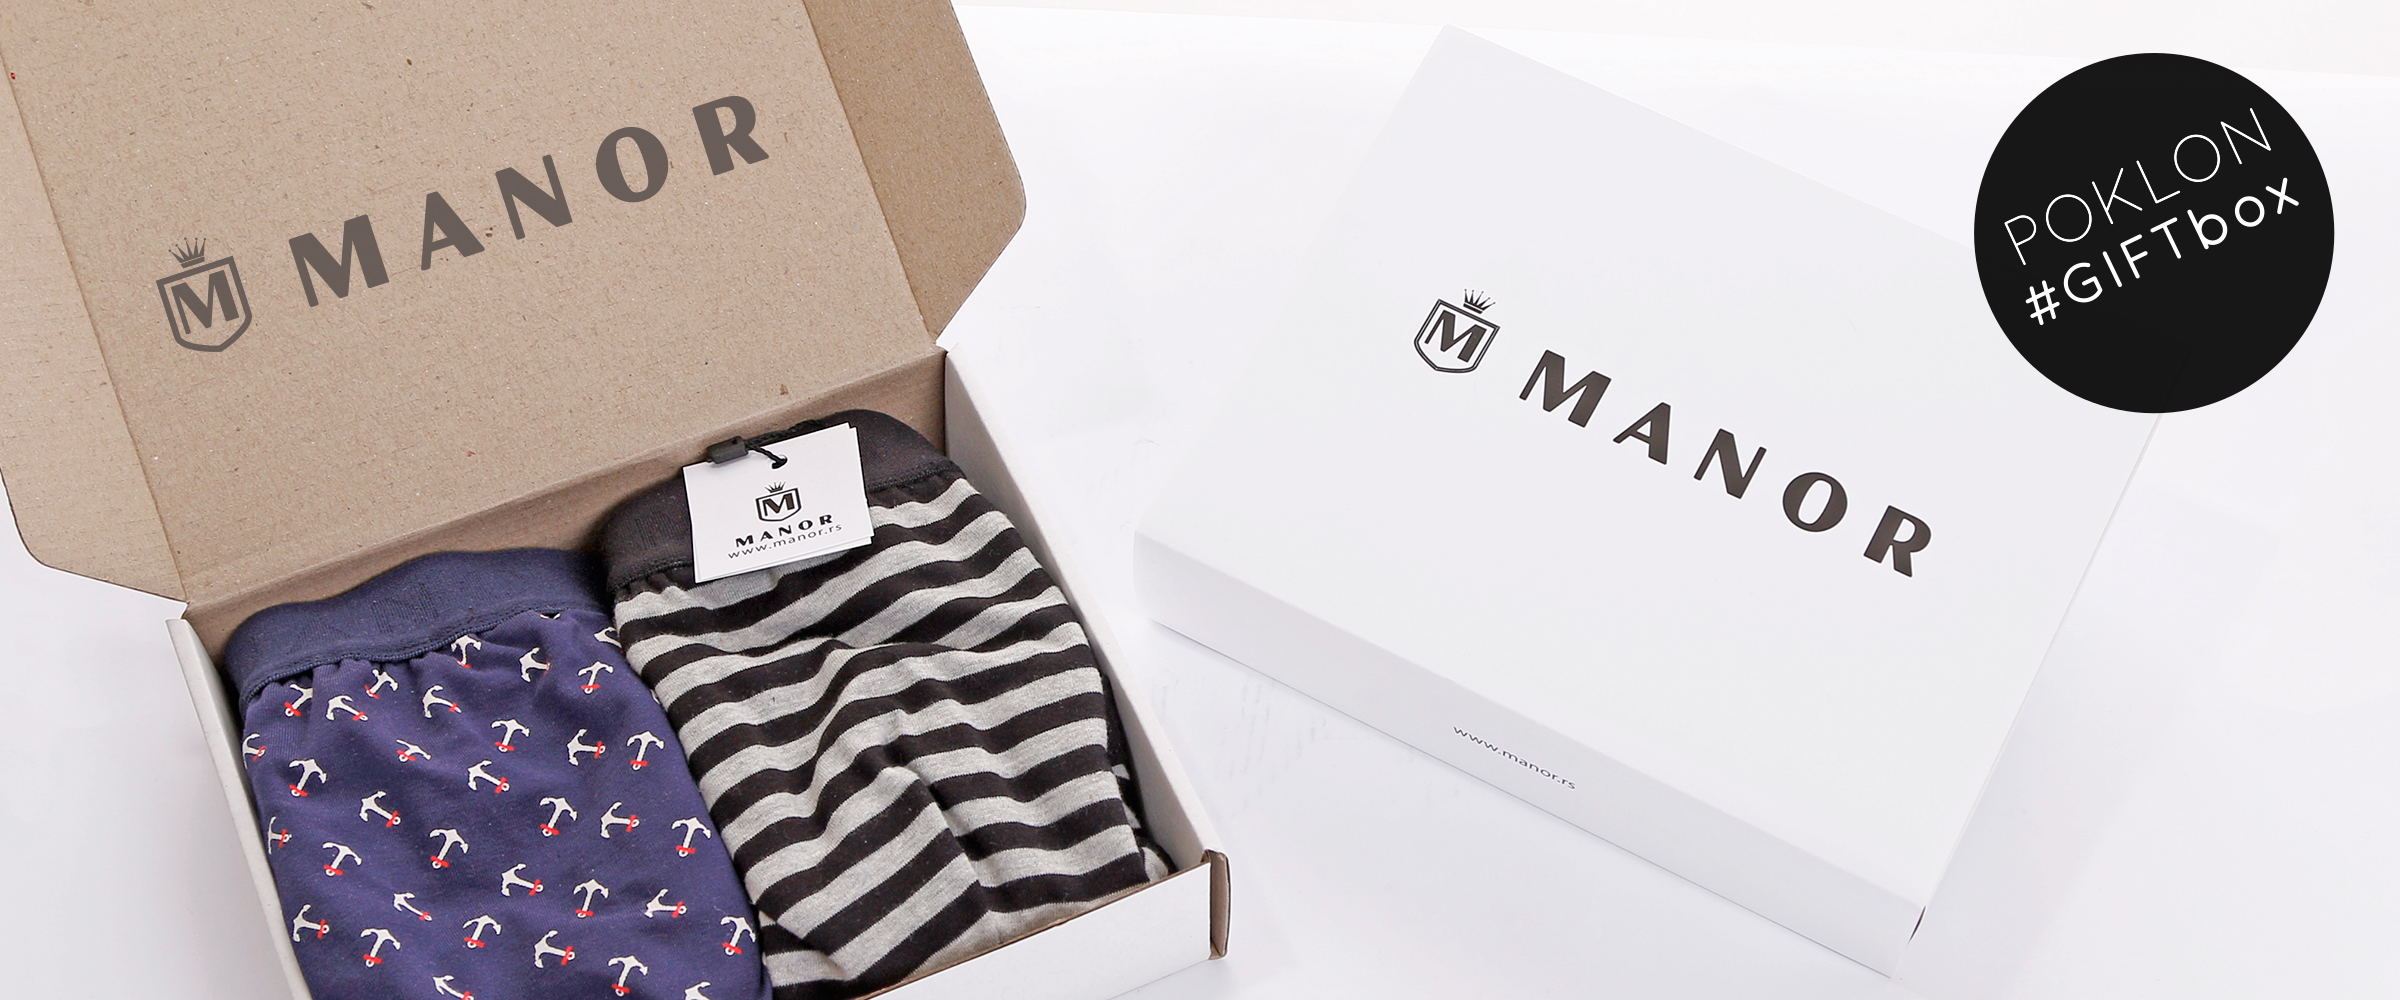 Manor underwear Gift Box